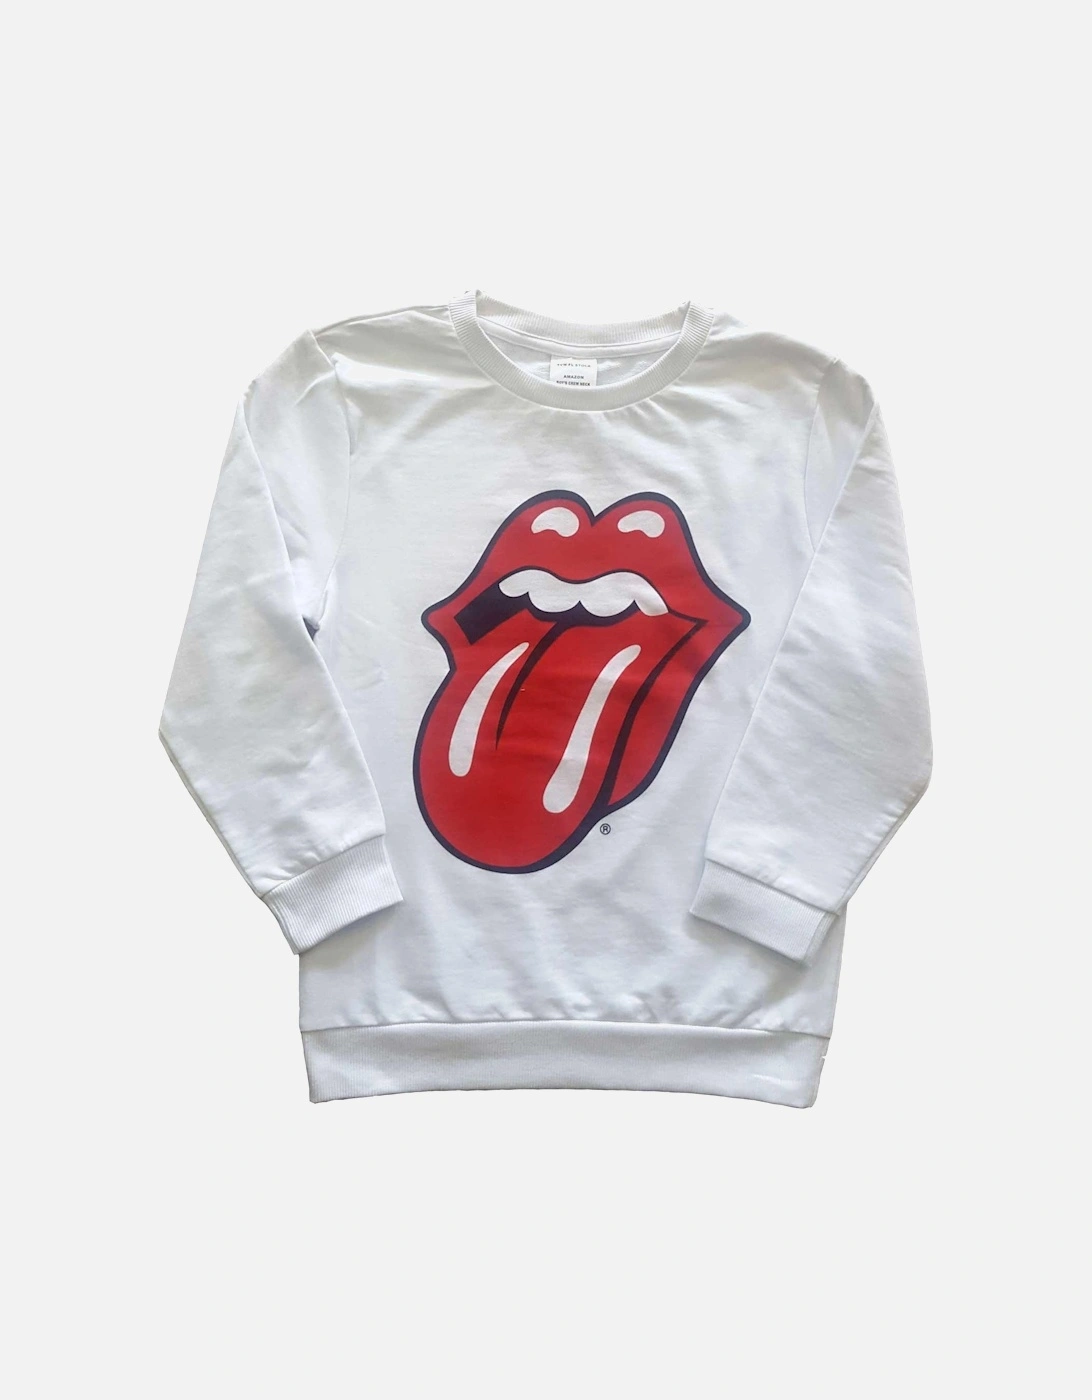 Childrens/Kids Classic Tongue Sweatshirt, 2 of 1